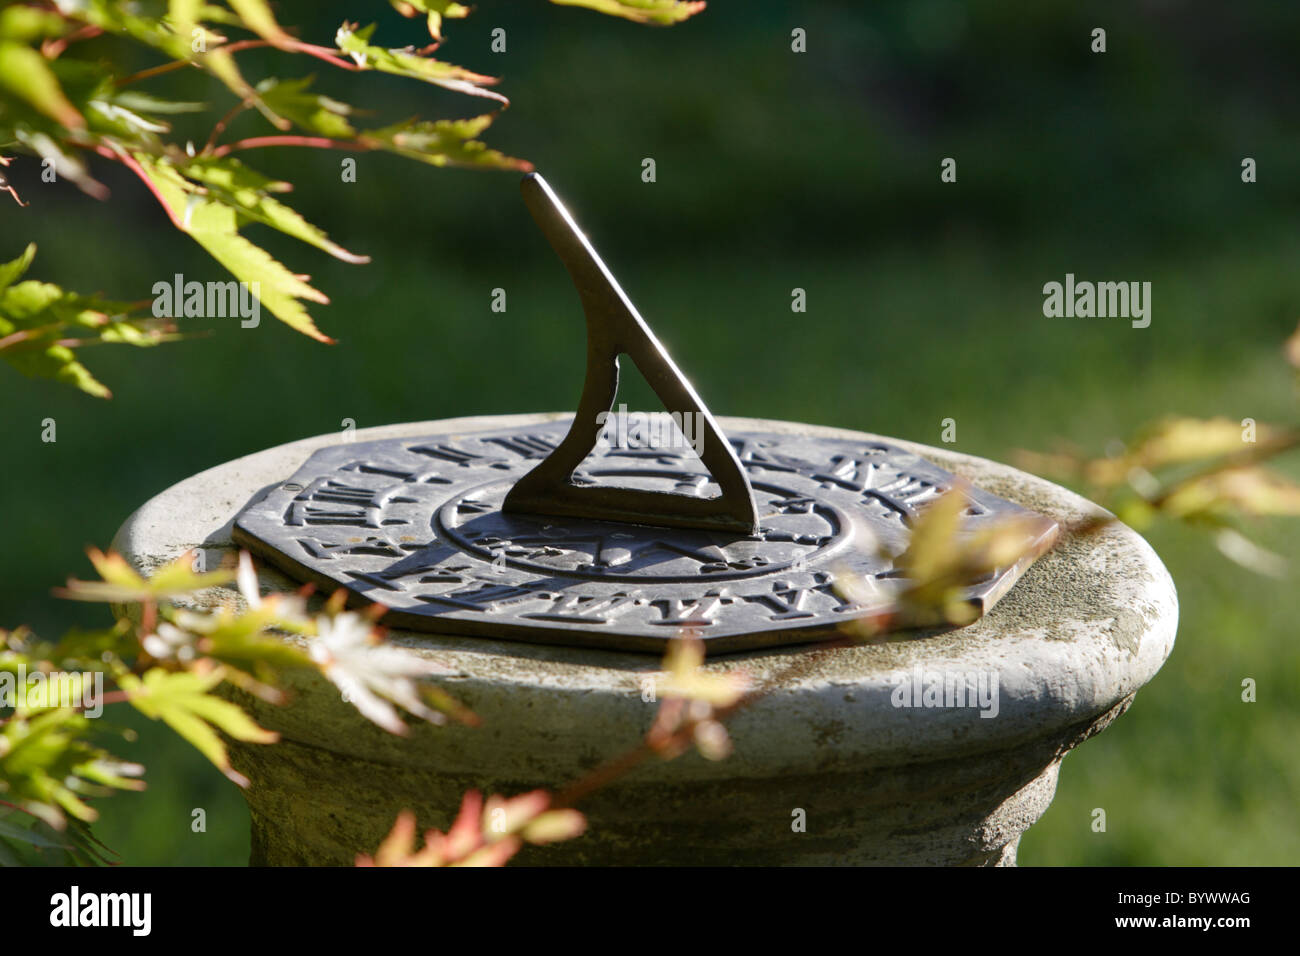 Garden sundial Stock Photo